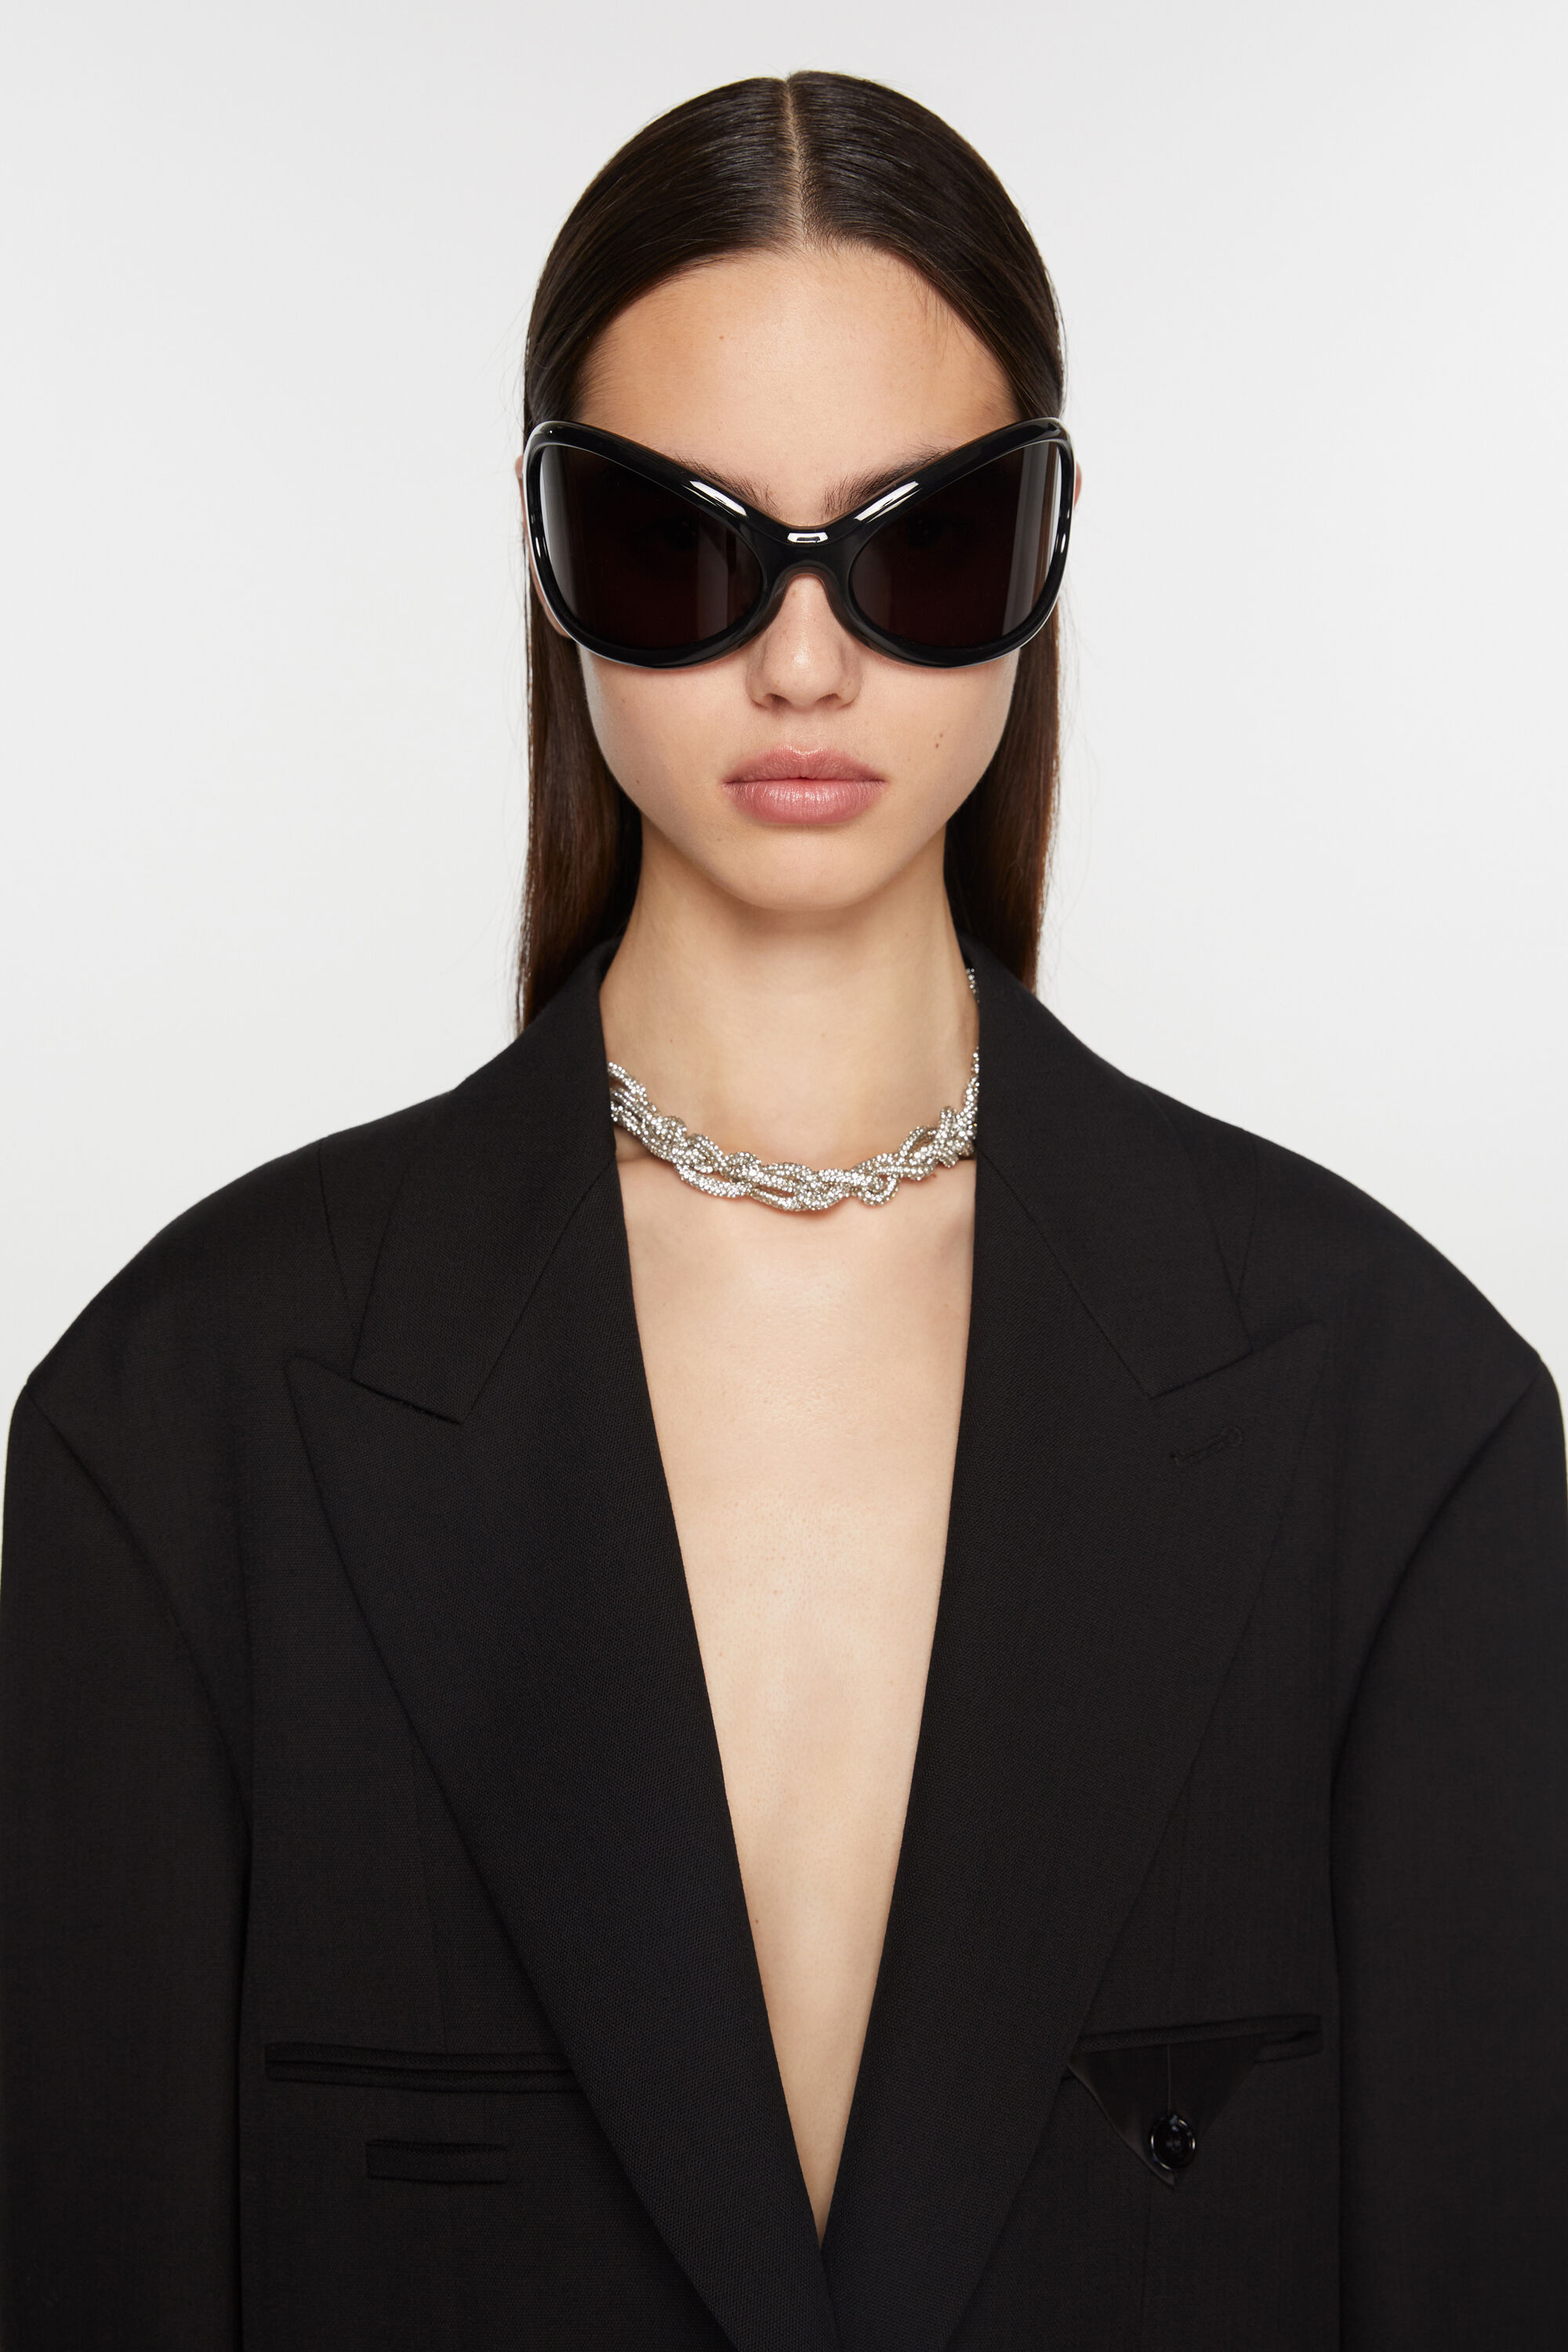 Acne Studios sunglasses サングラスユニセックス用ですかね